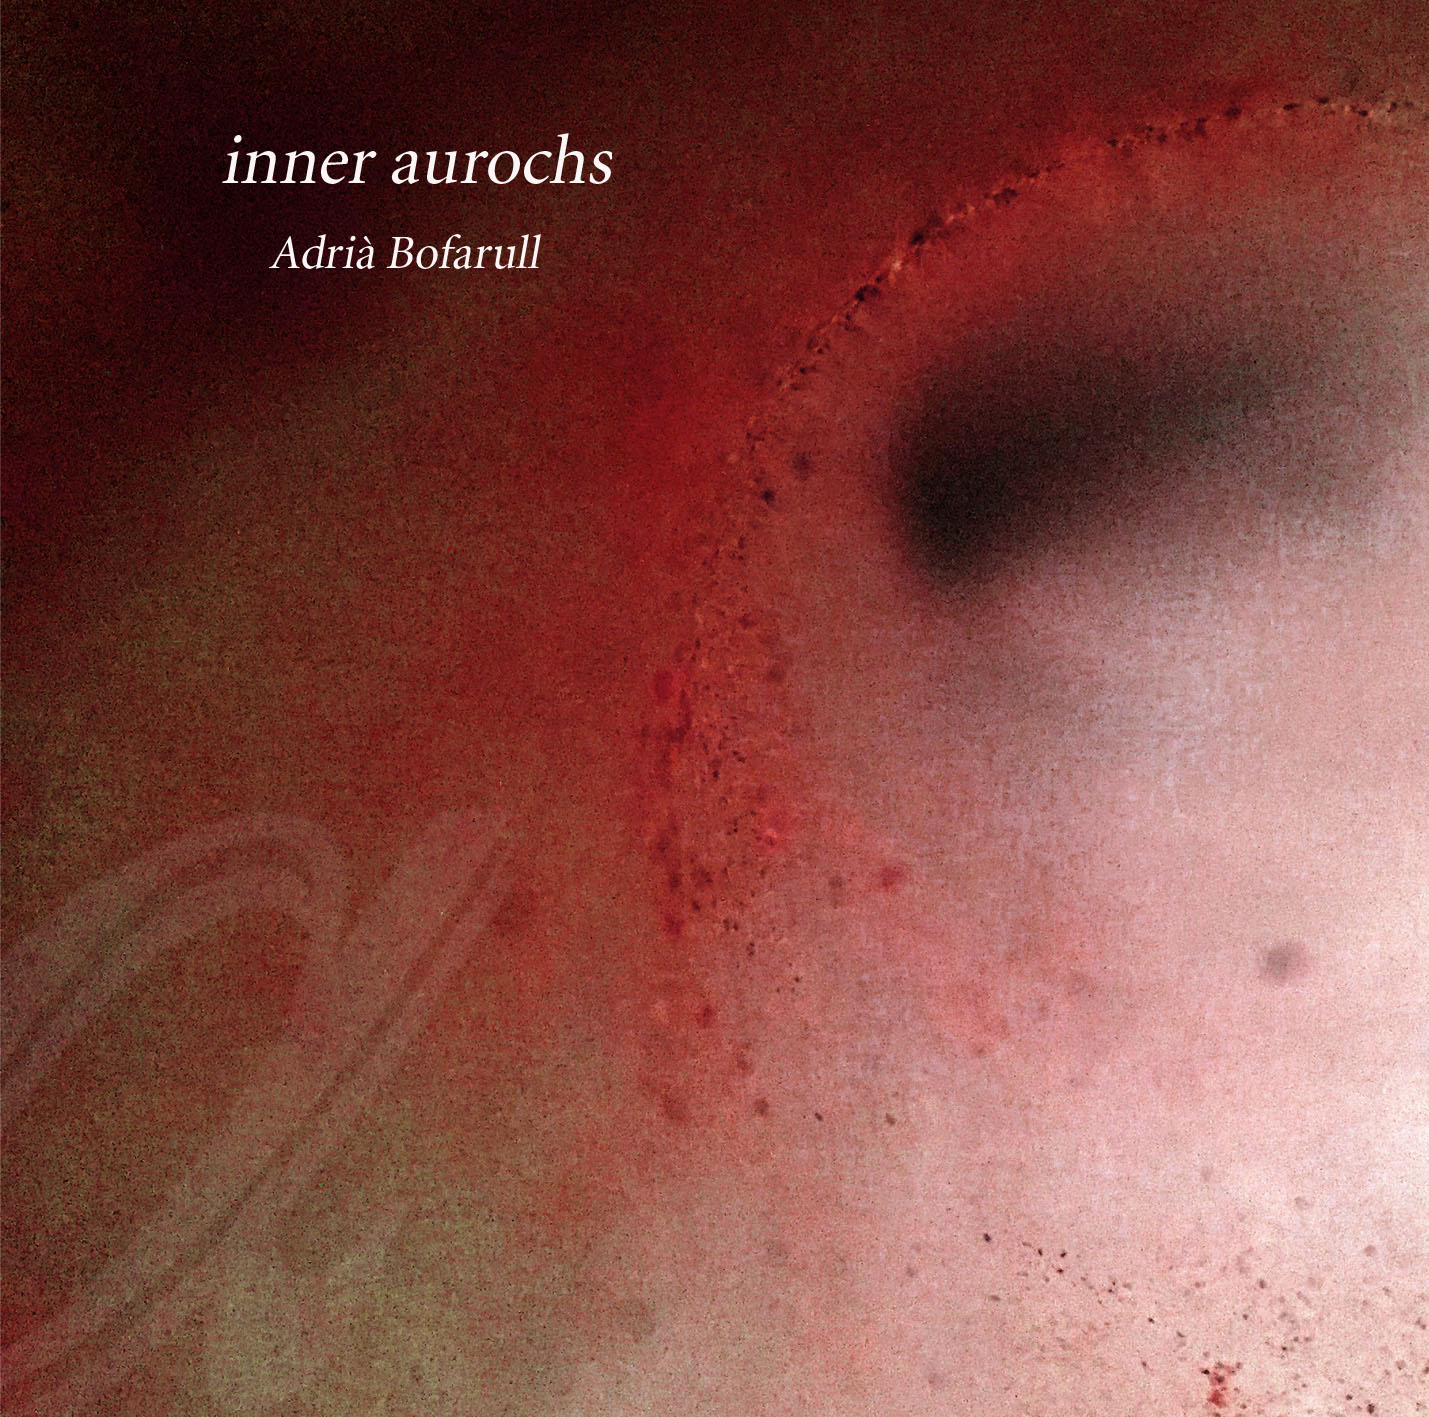 Adrià Bofarull – inner aurochs